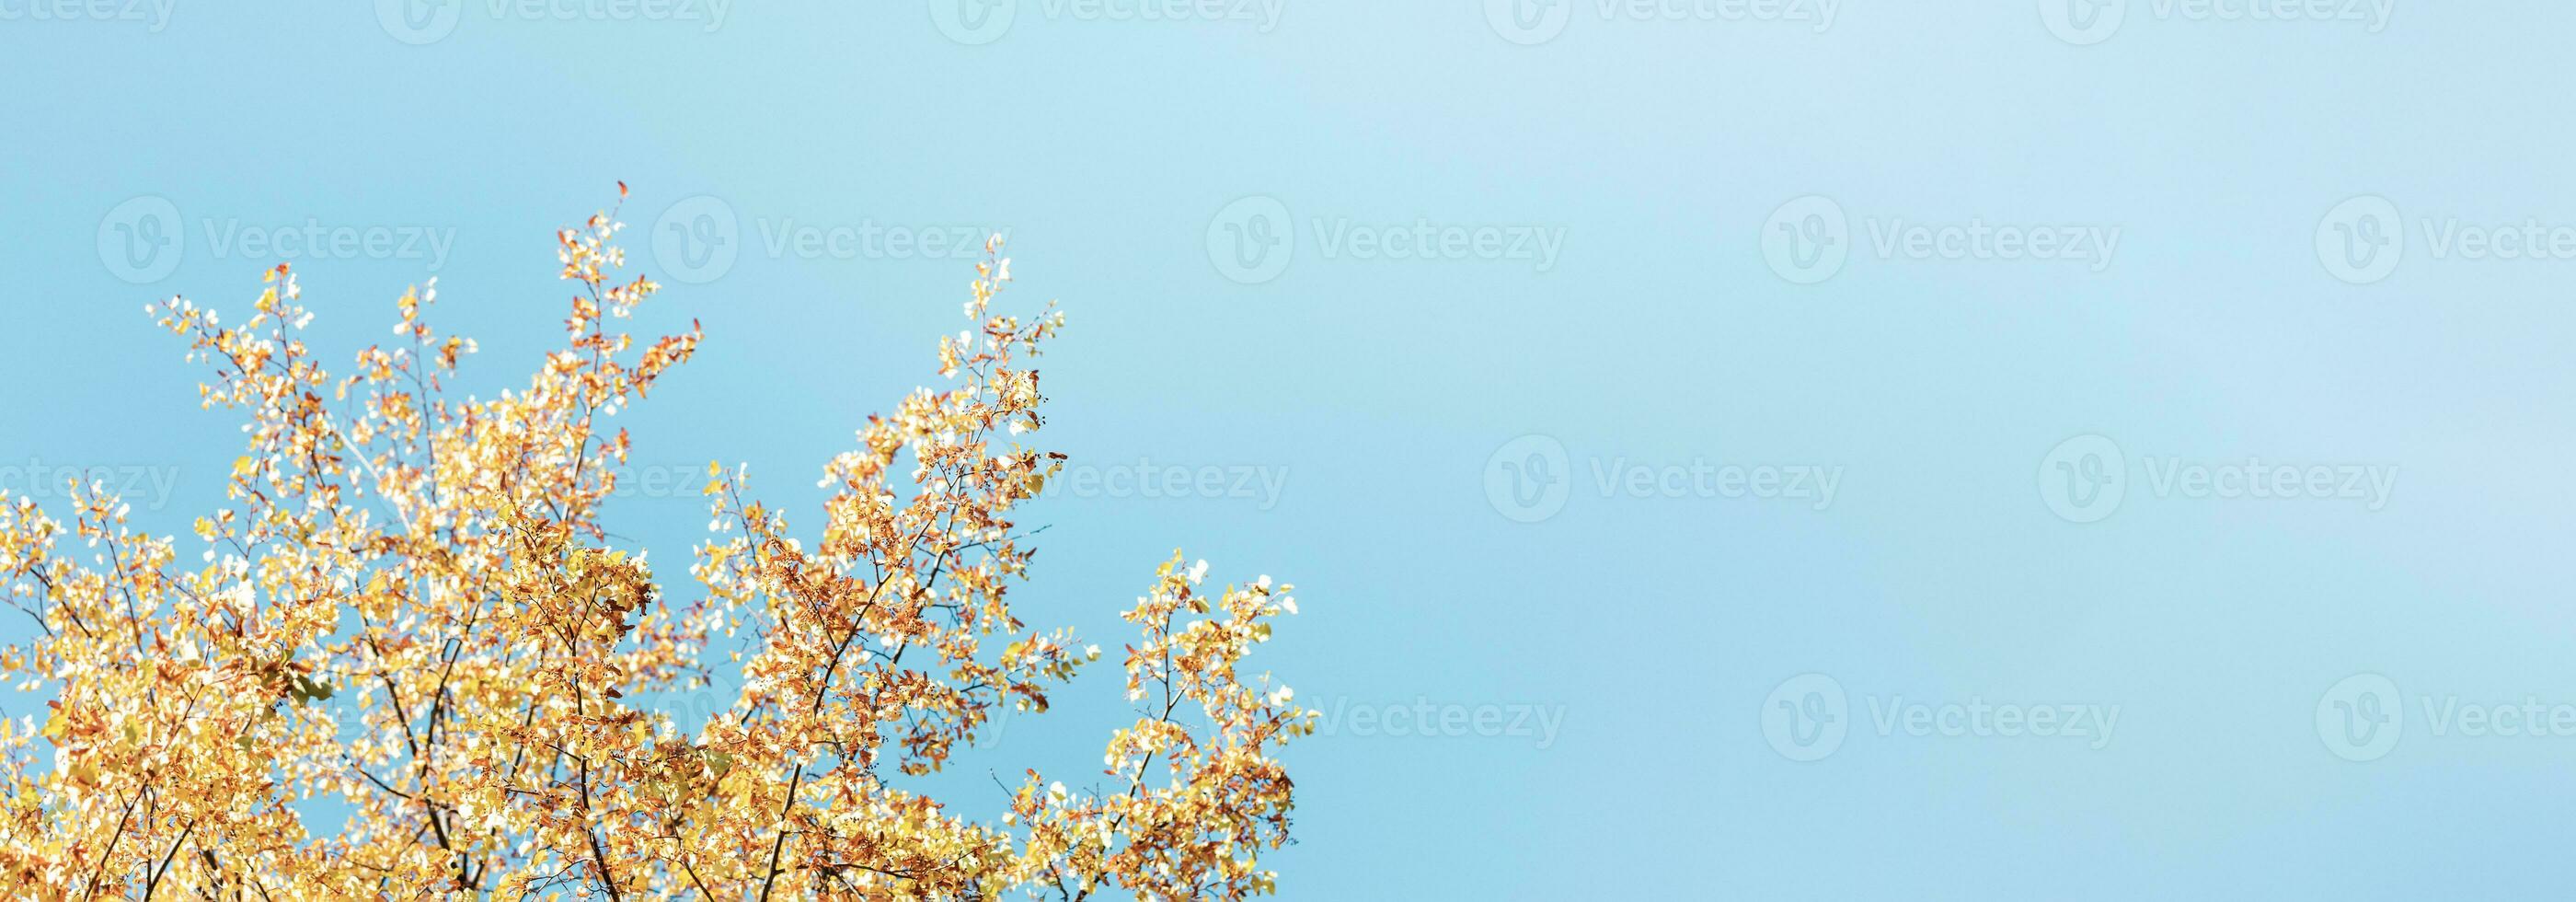 outono bandeira com iluminado pelo sol árvore tops com amarelo folhas e sementes contra turquesa céu. cópia de espaço. foto